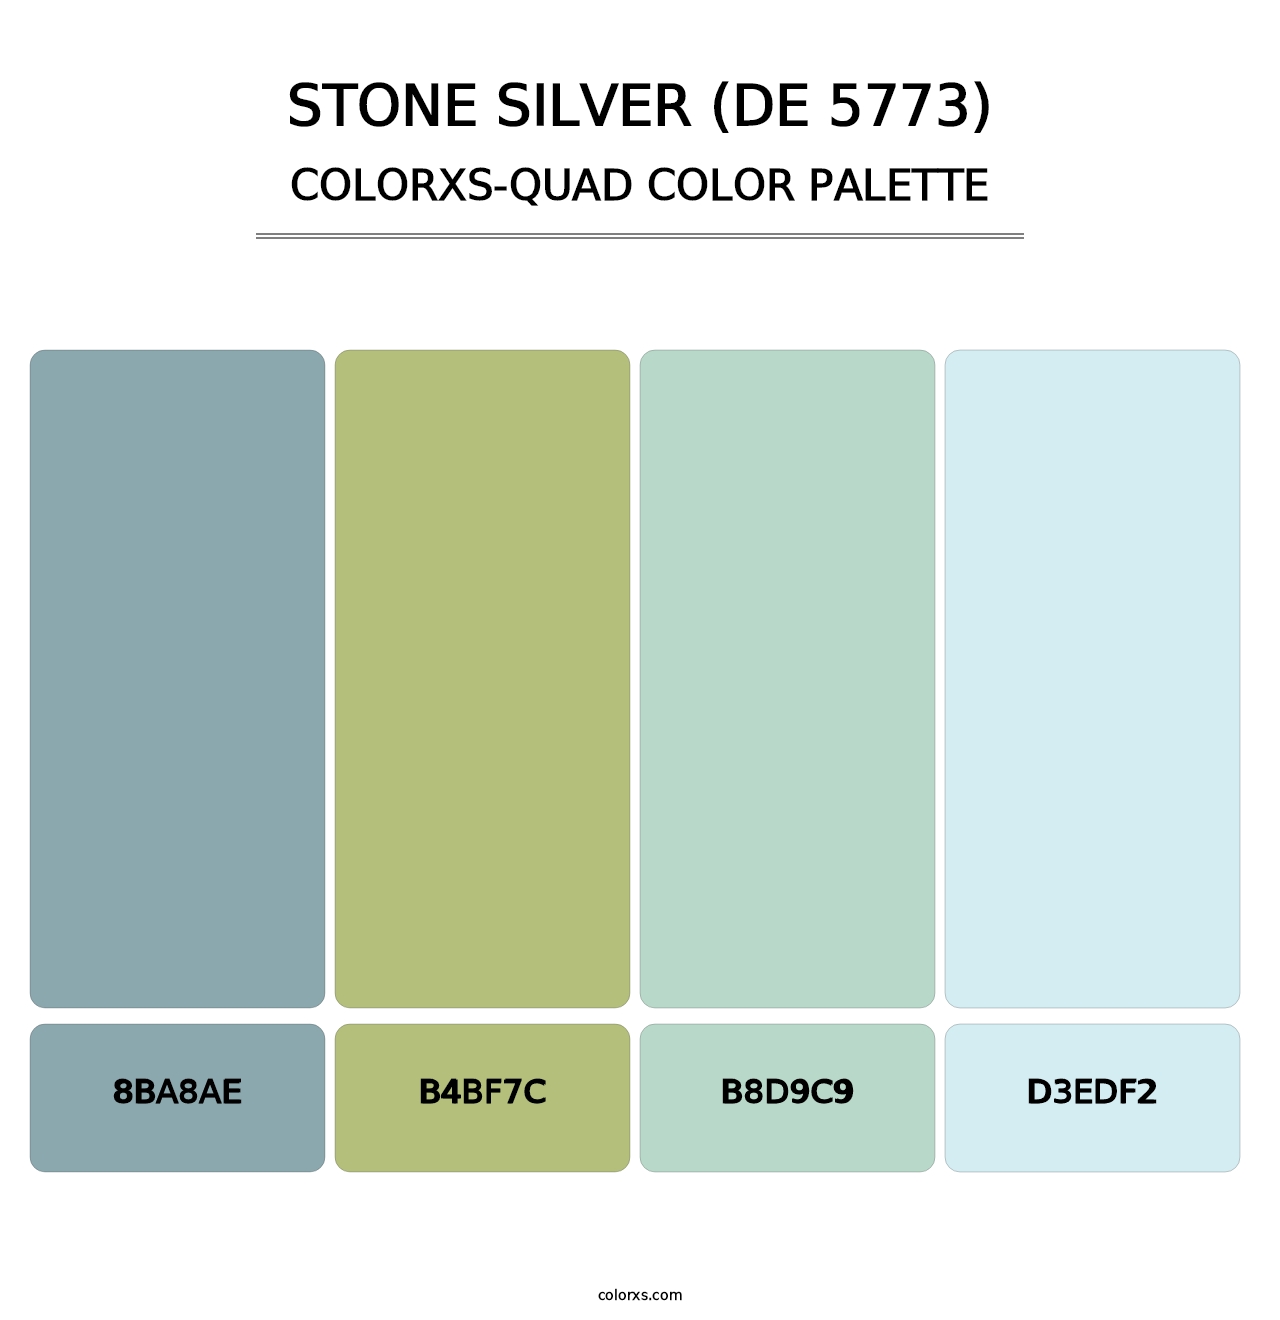 Stone Silver (DE 5773) - Colorxs Quad Palette